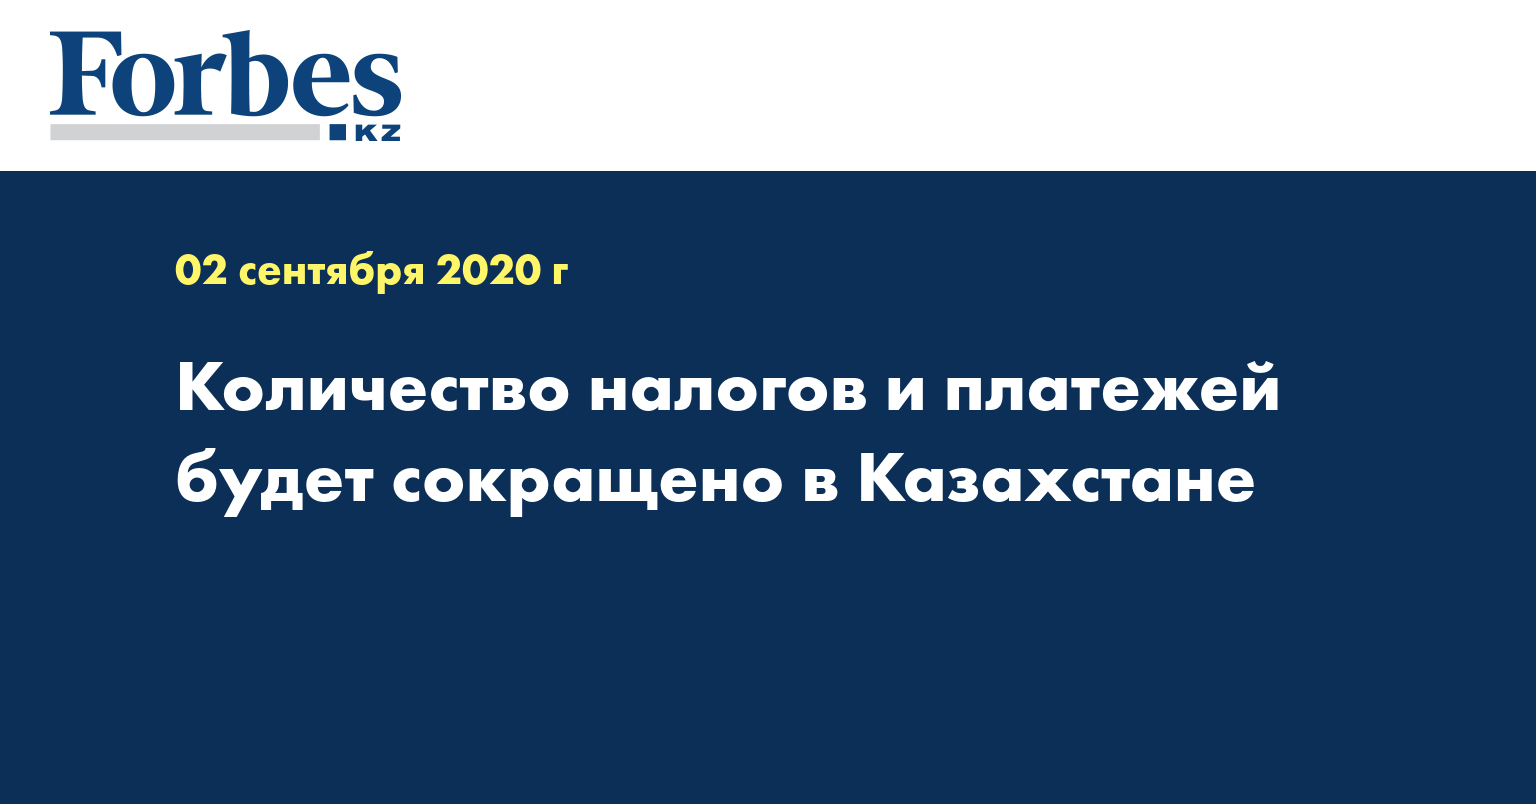 Количество налогов и платежей будет сокращено в Казахстане